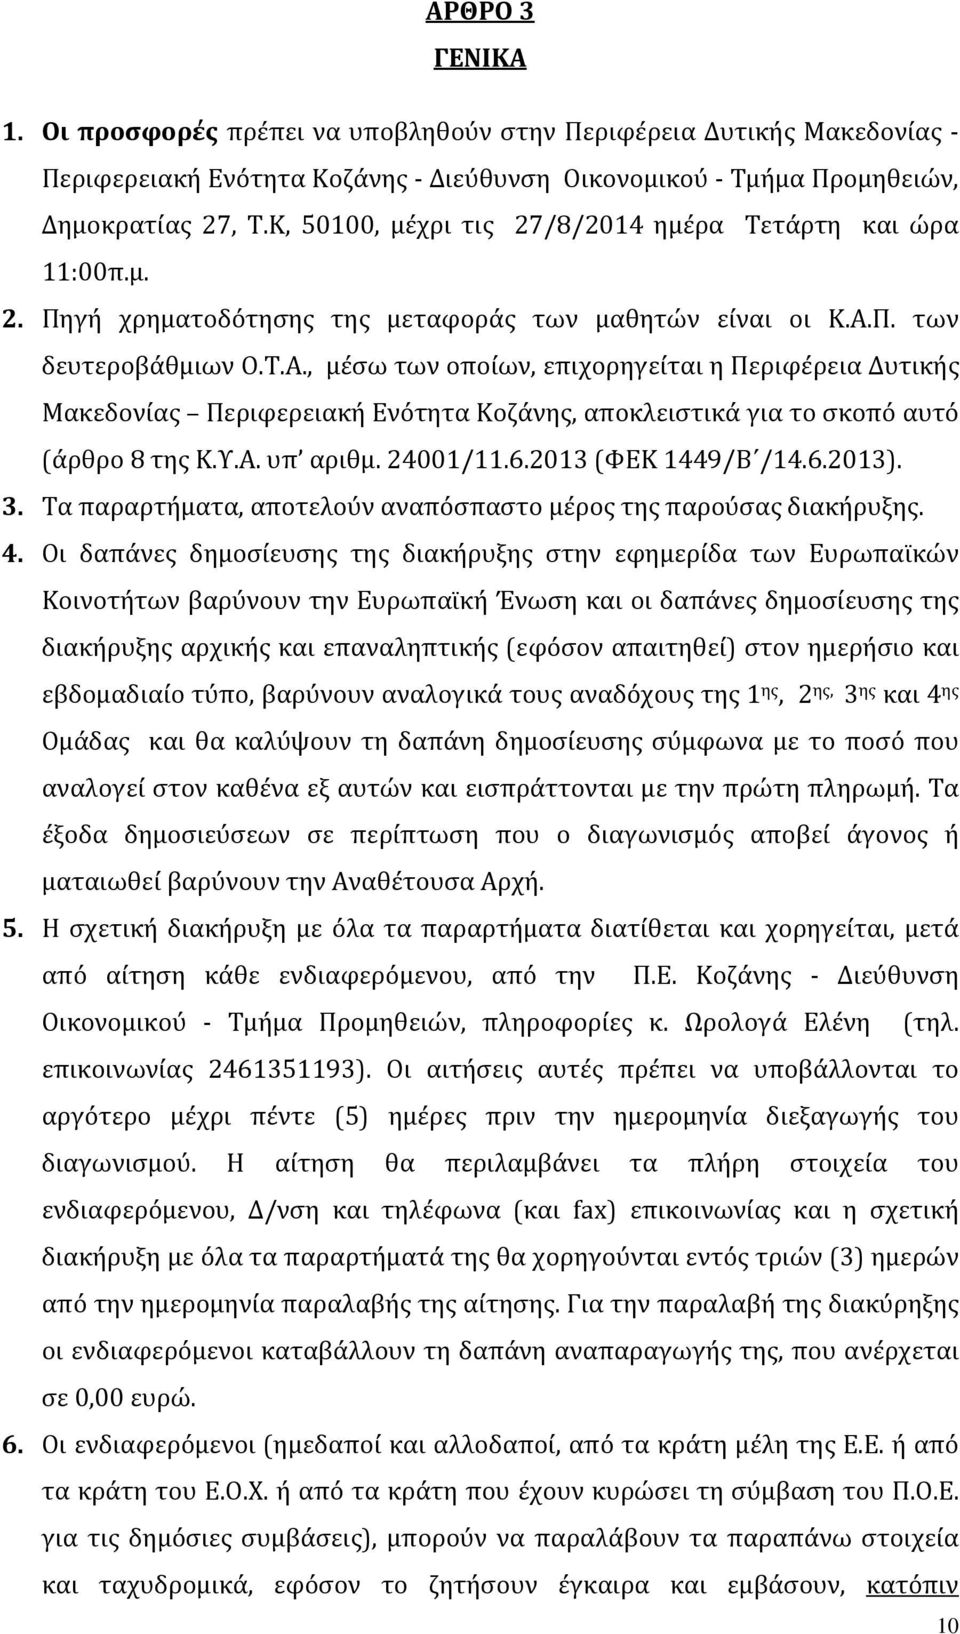 Π. των δευτεροβάθμιων Ο.Τ.Α., μέσω των οποίων, επιχορηγείται η Περιφέρεια Δυτικής Μακεδονίας Περιφερειακή Ενότητα Κοζάνης, αποκλειστικά για το σκοπό αυτό (α ρθρο 8 της Κ.Υ.Α. υπ αριθμ. 24001/11.6.